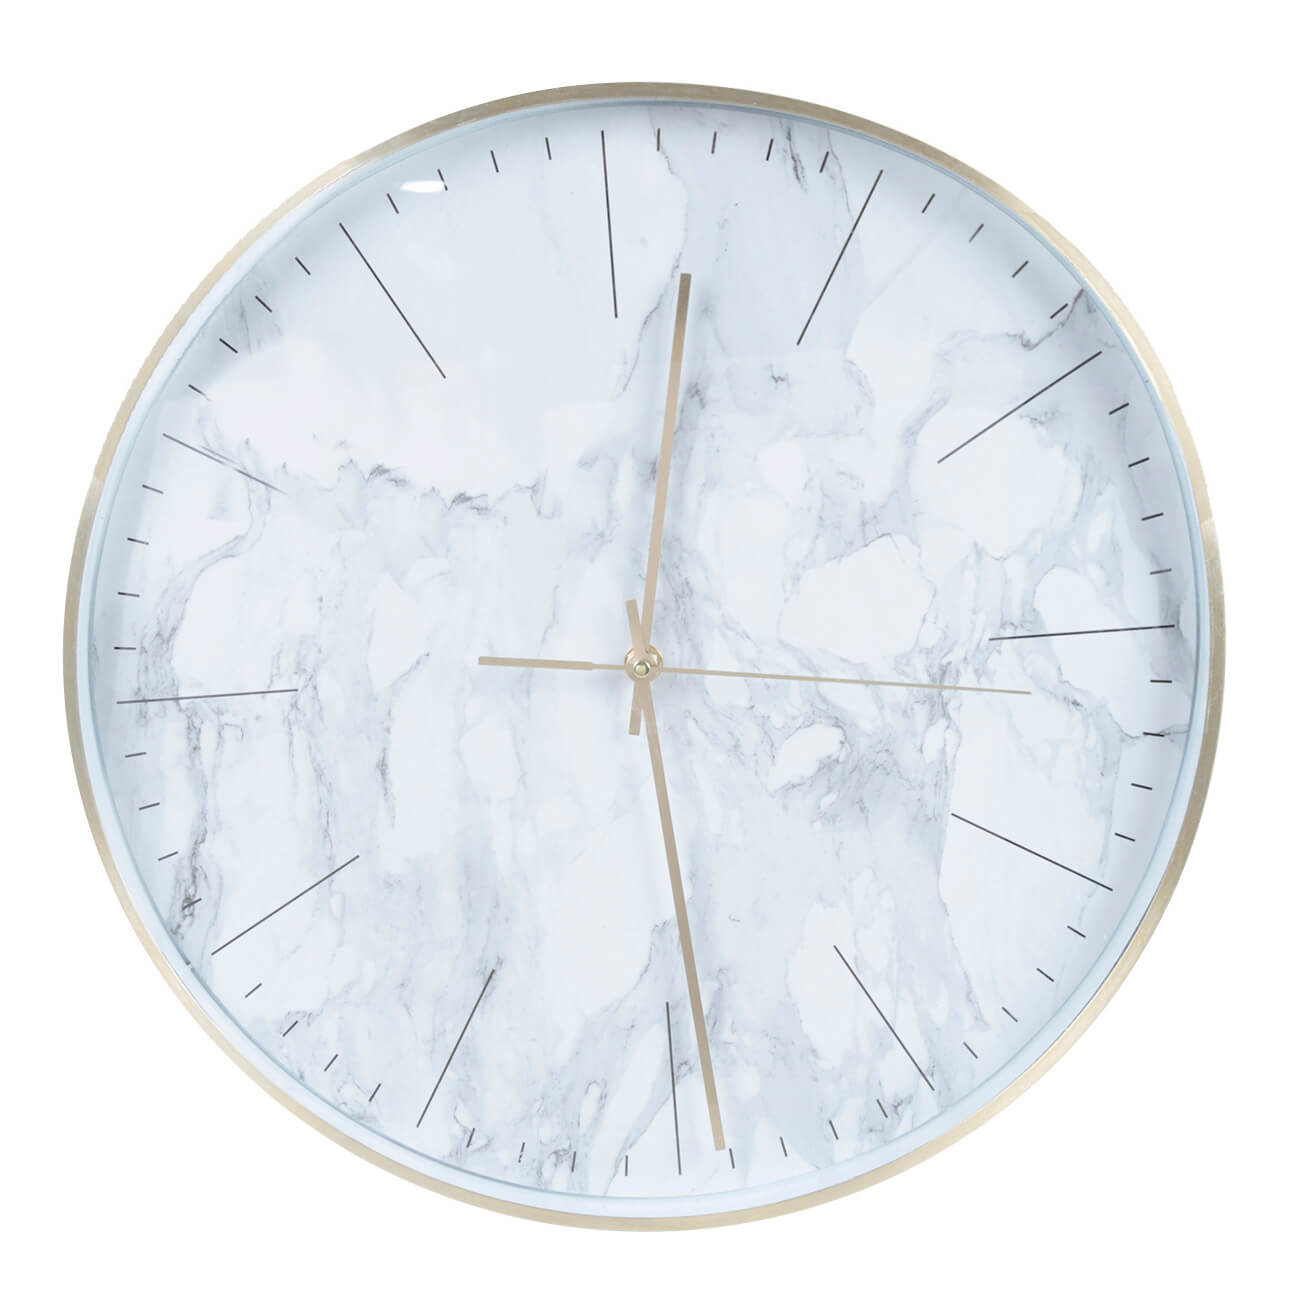 Часы настенные, 40 см, пластик/стекло, круглые, белые, Мрамор, Maniera изображение № 1